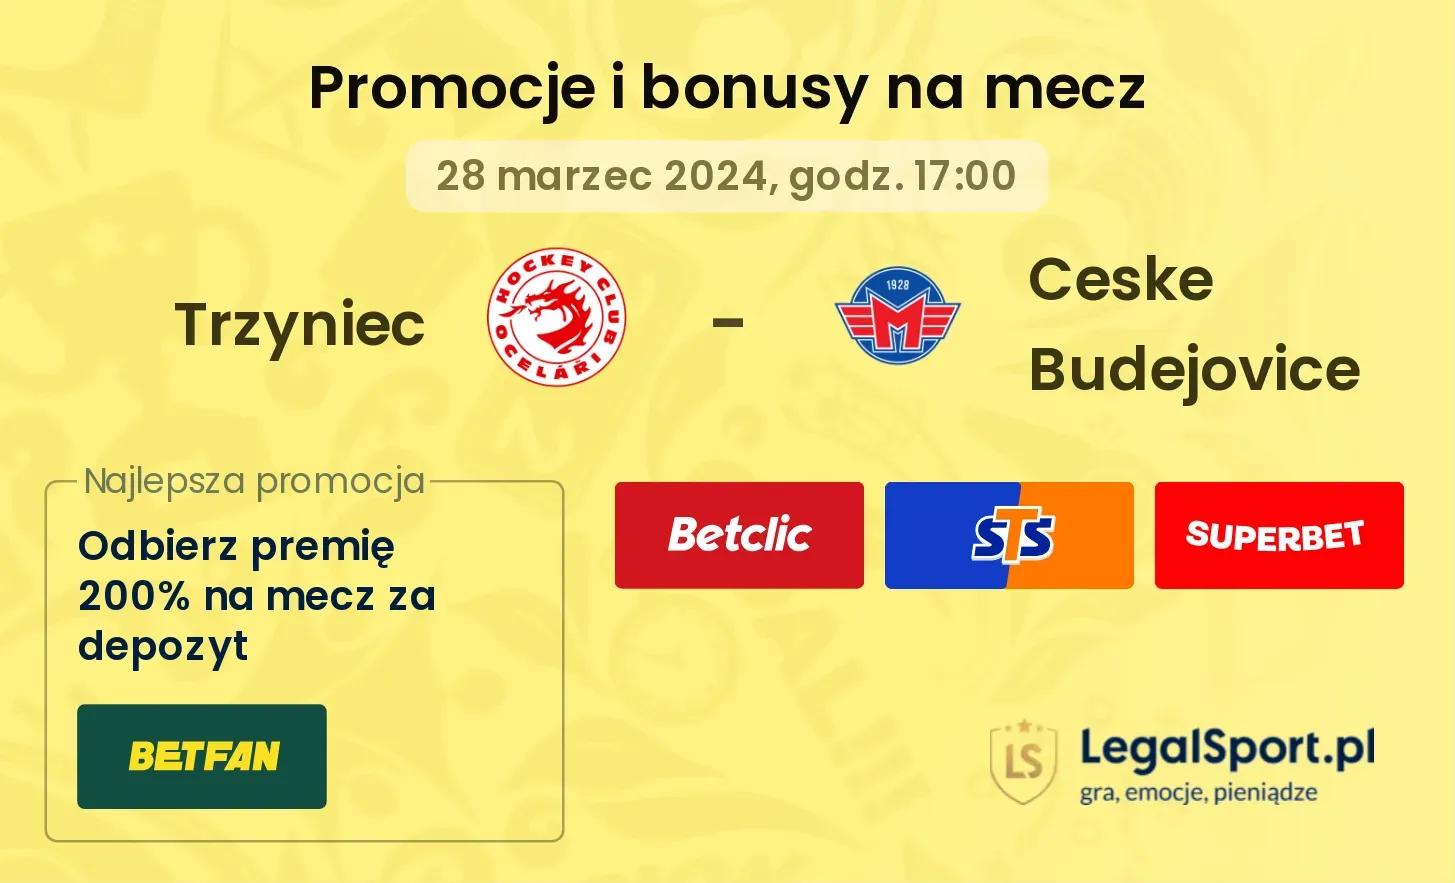 Trzyniec - Ceske Budejovice  promocje bonusy na mecz